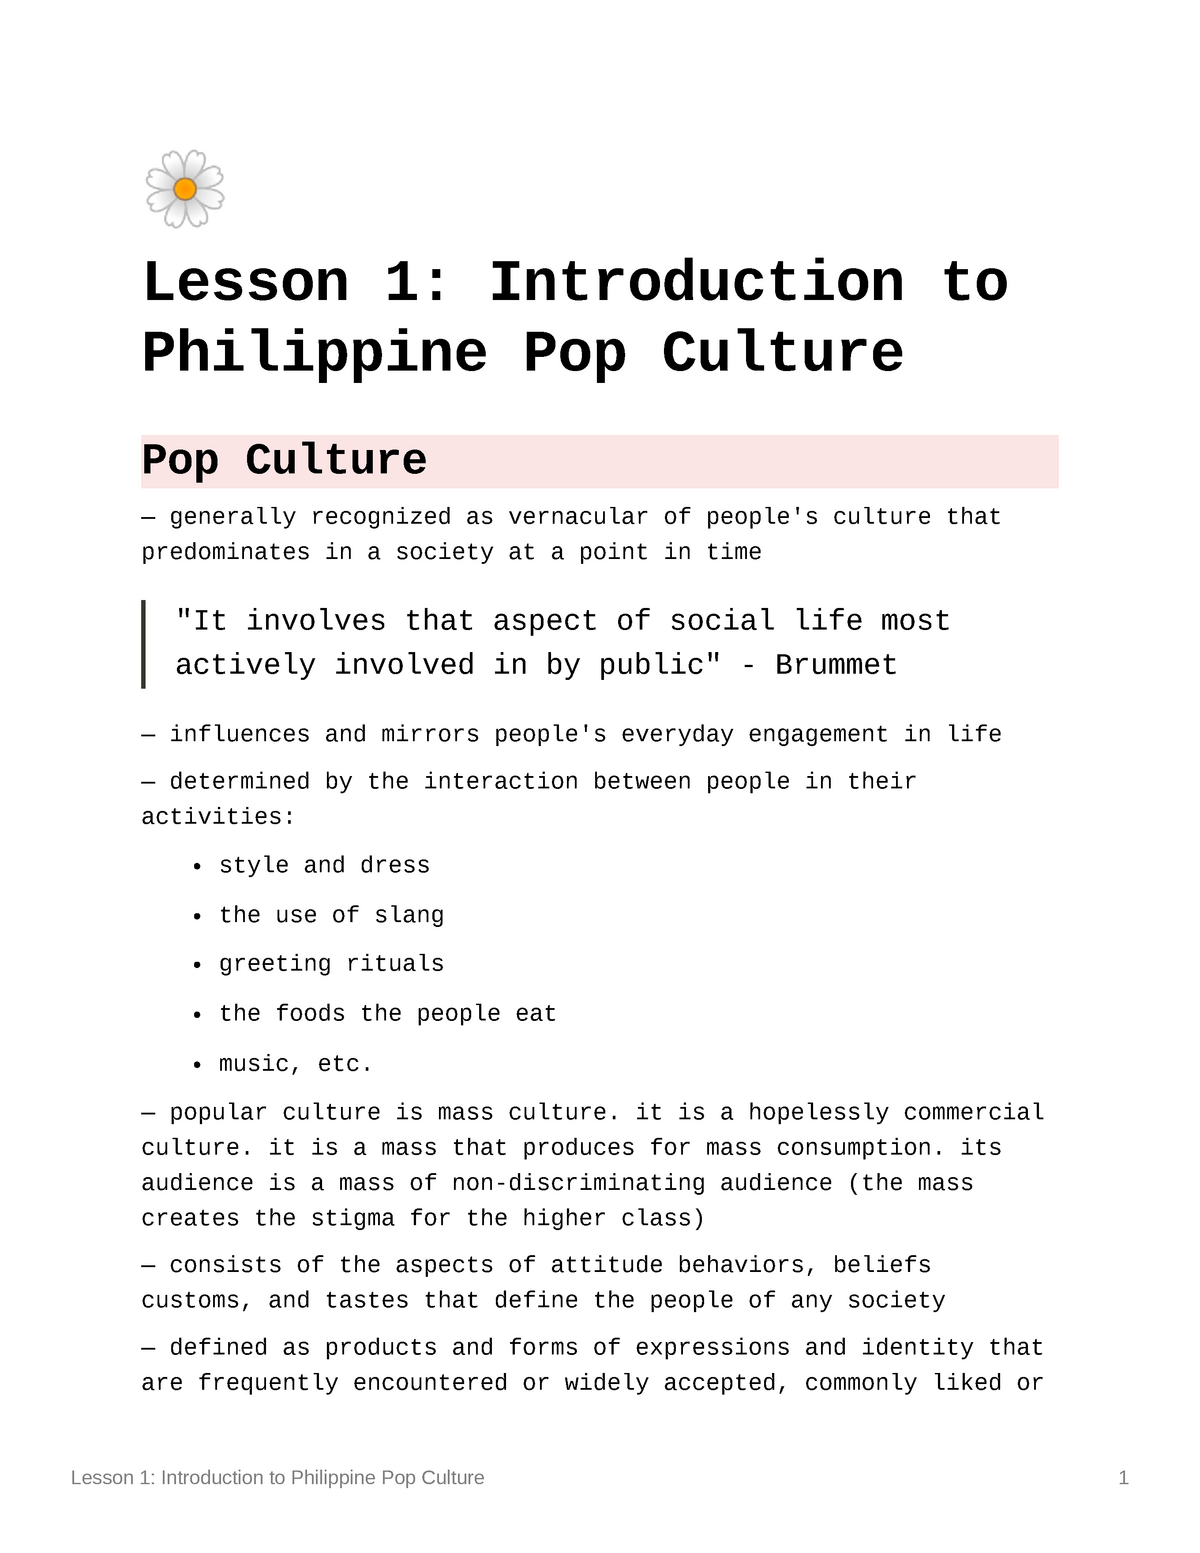 philippine popular culture essay